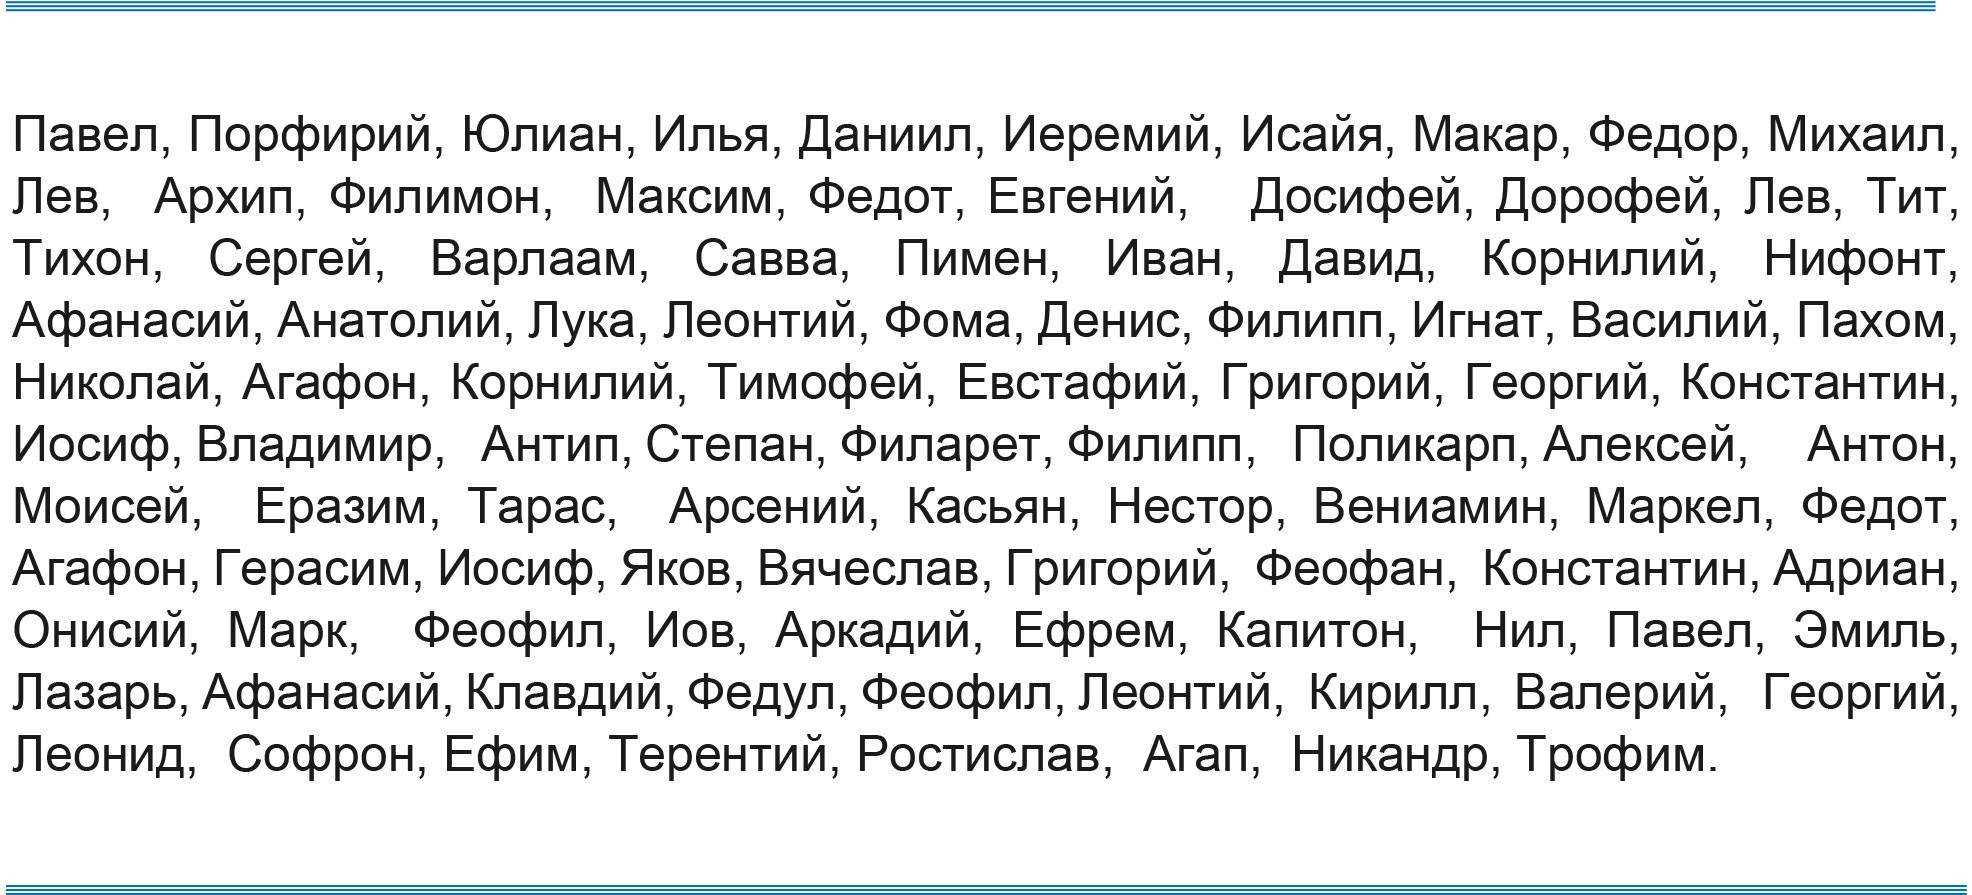 Имена мальчиков по месяцам на 2021 год по православному календарю